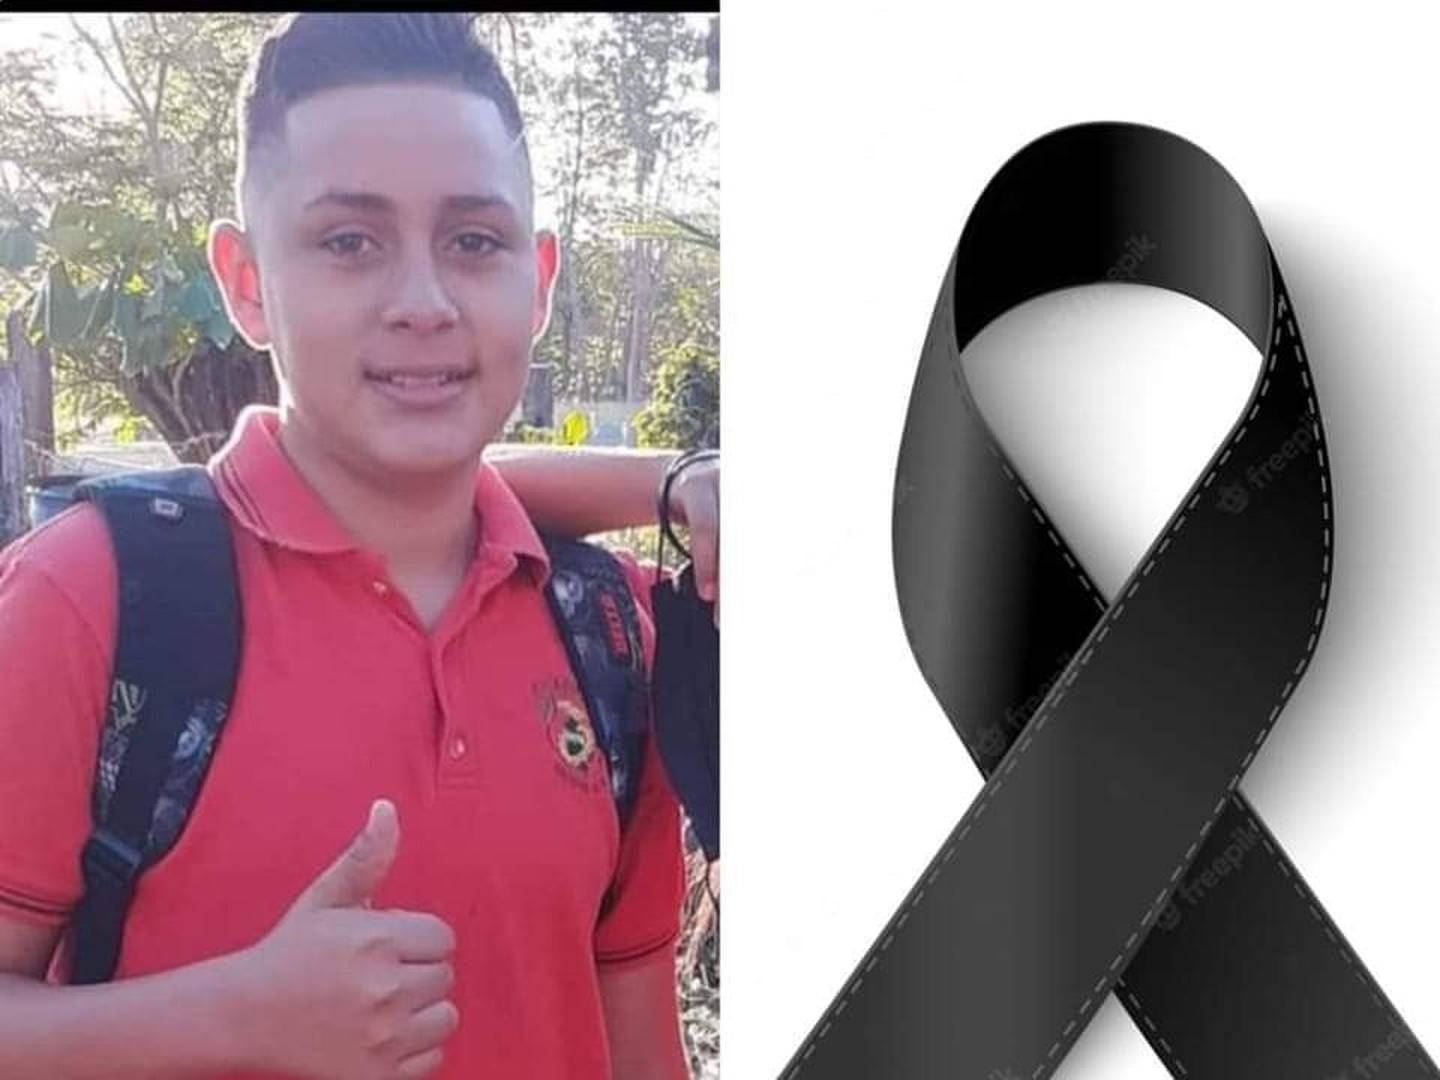 Dagoberto Cortés, joven de 13 años que falleció atropellado por conductor que se dio a la fuga en Nicoya. Foto cortesía.